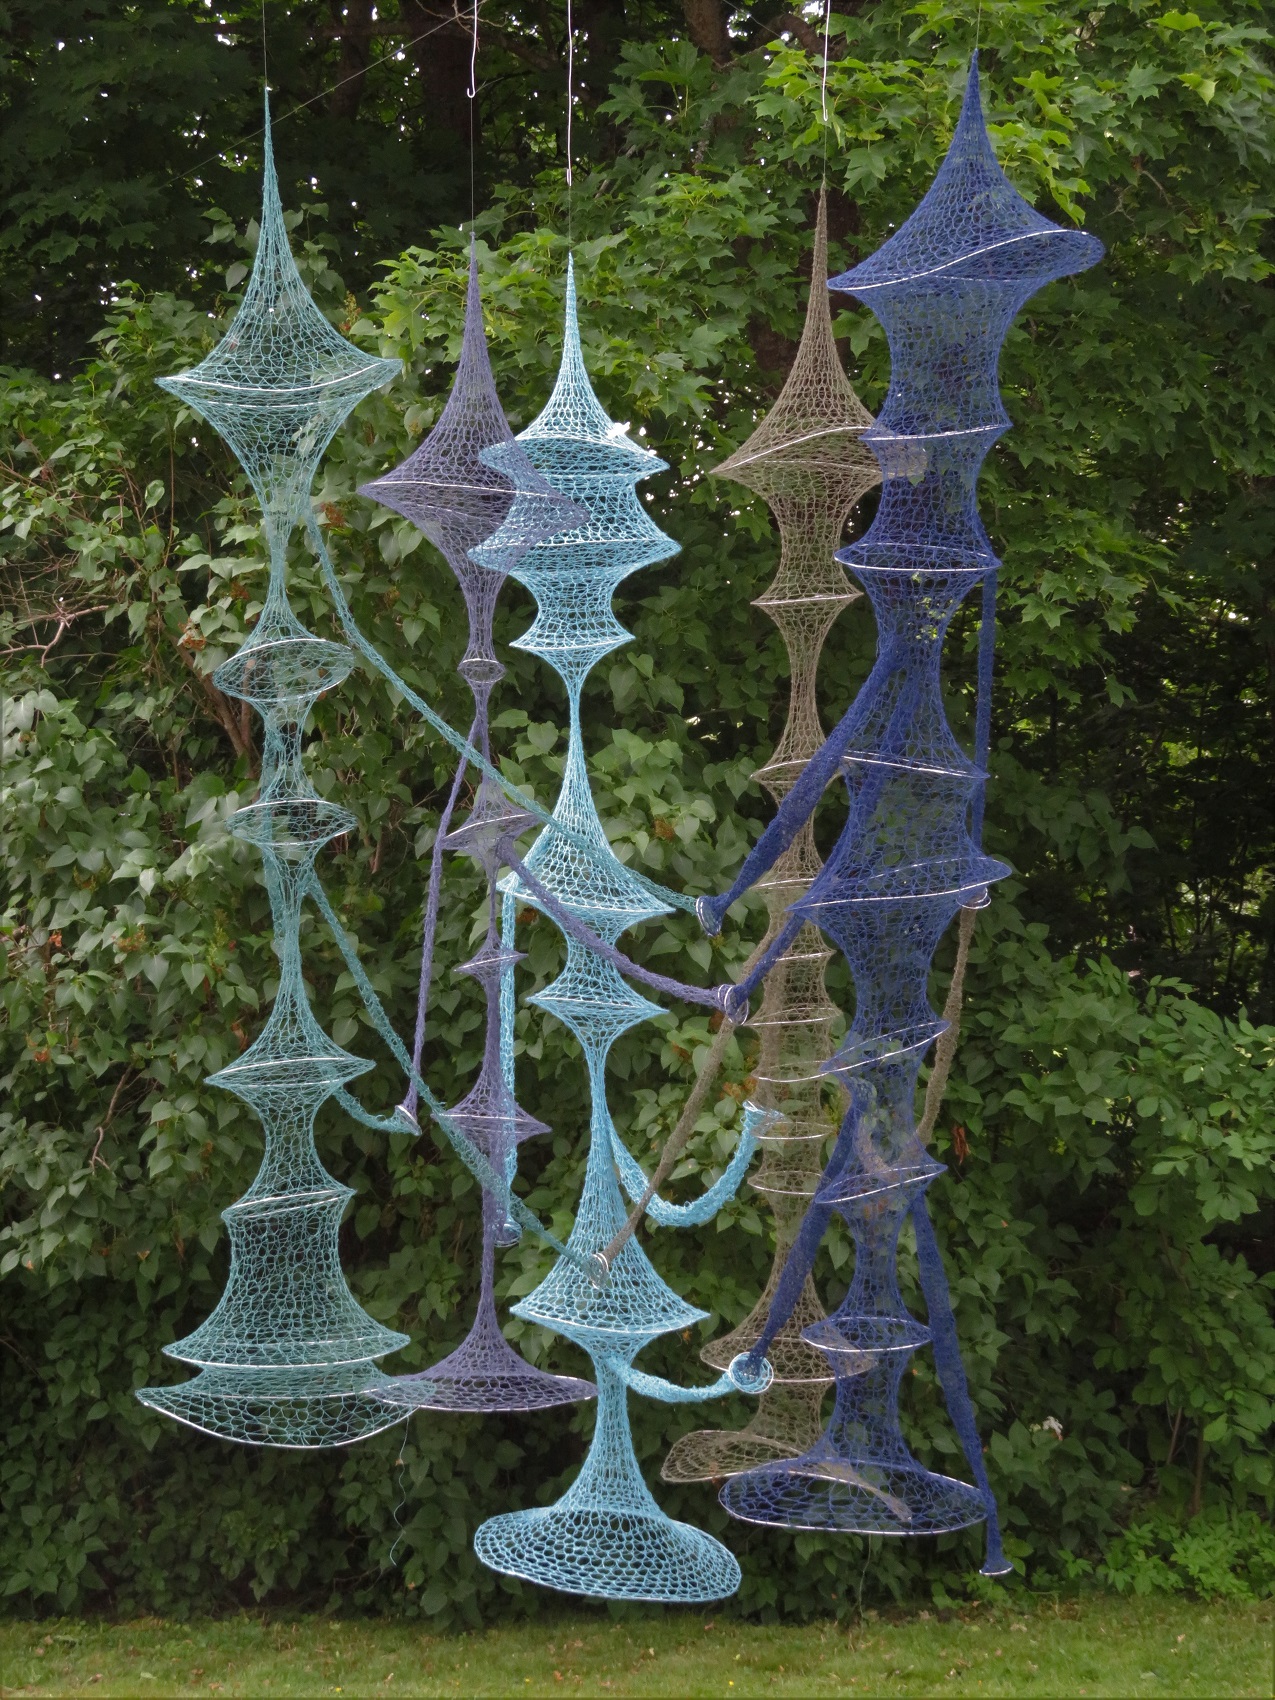 Fotografi av skulptur med flera virkade, hängande former i blått och turkos garn.